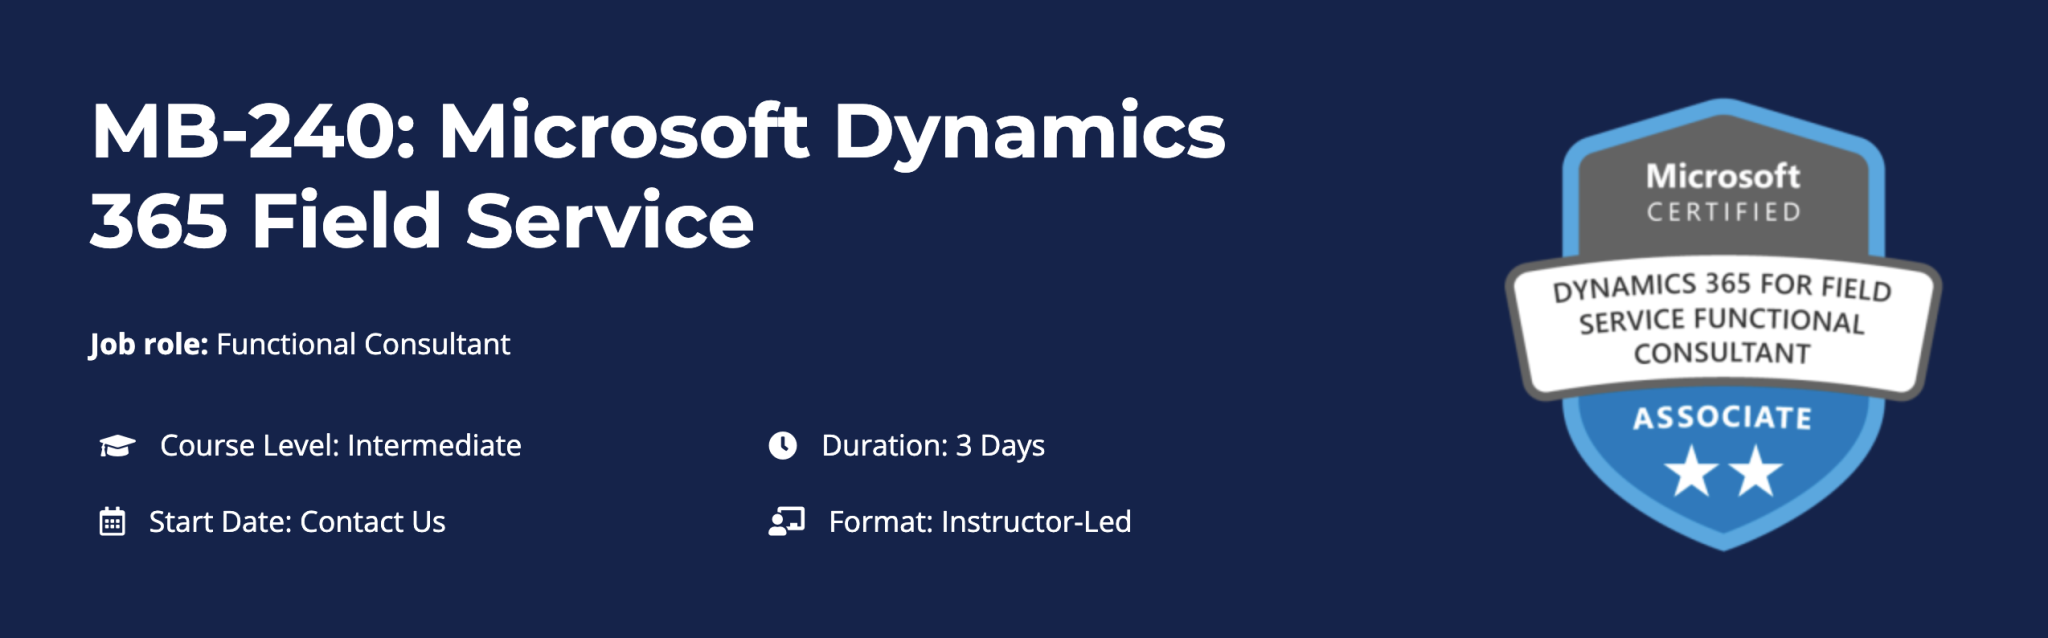 MB-240: Microsoft Dynamics 365 Field Service